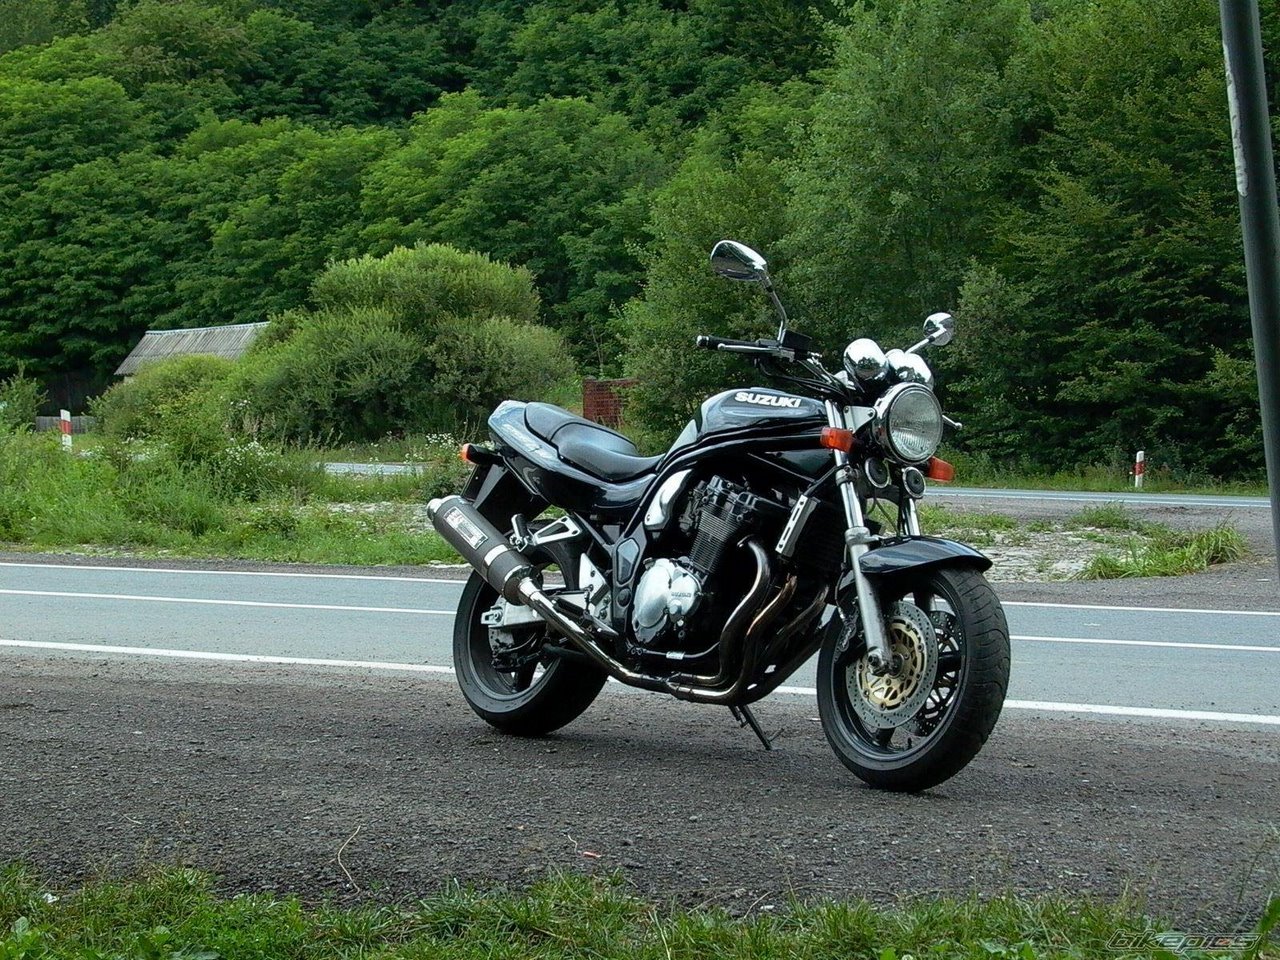 Suzuki GSF 1200 Bandit